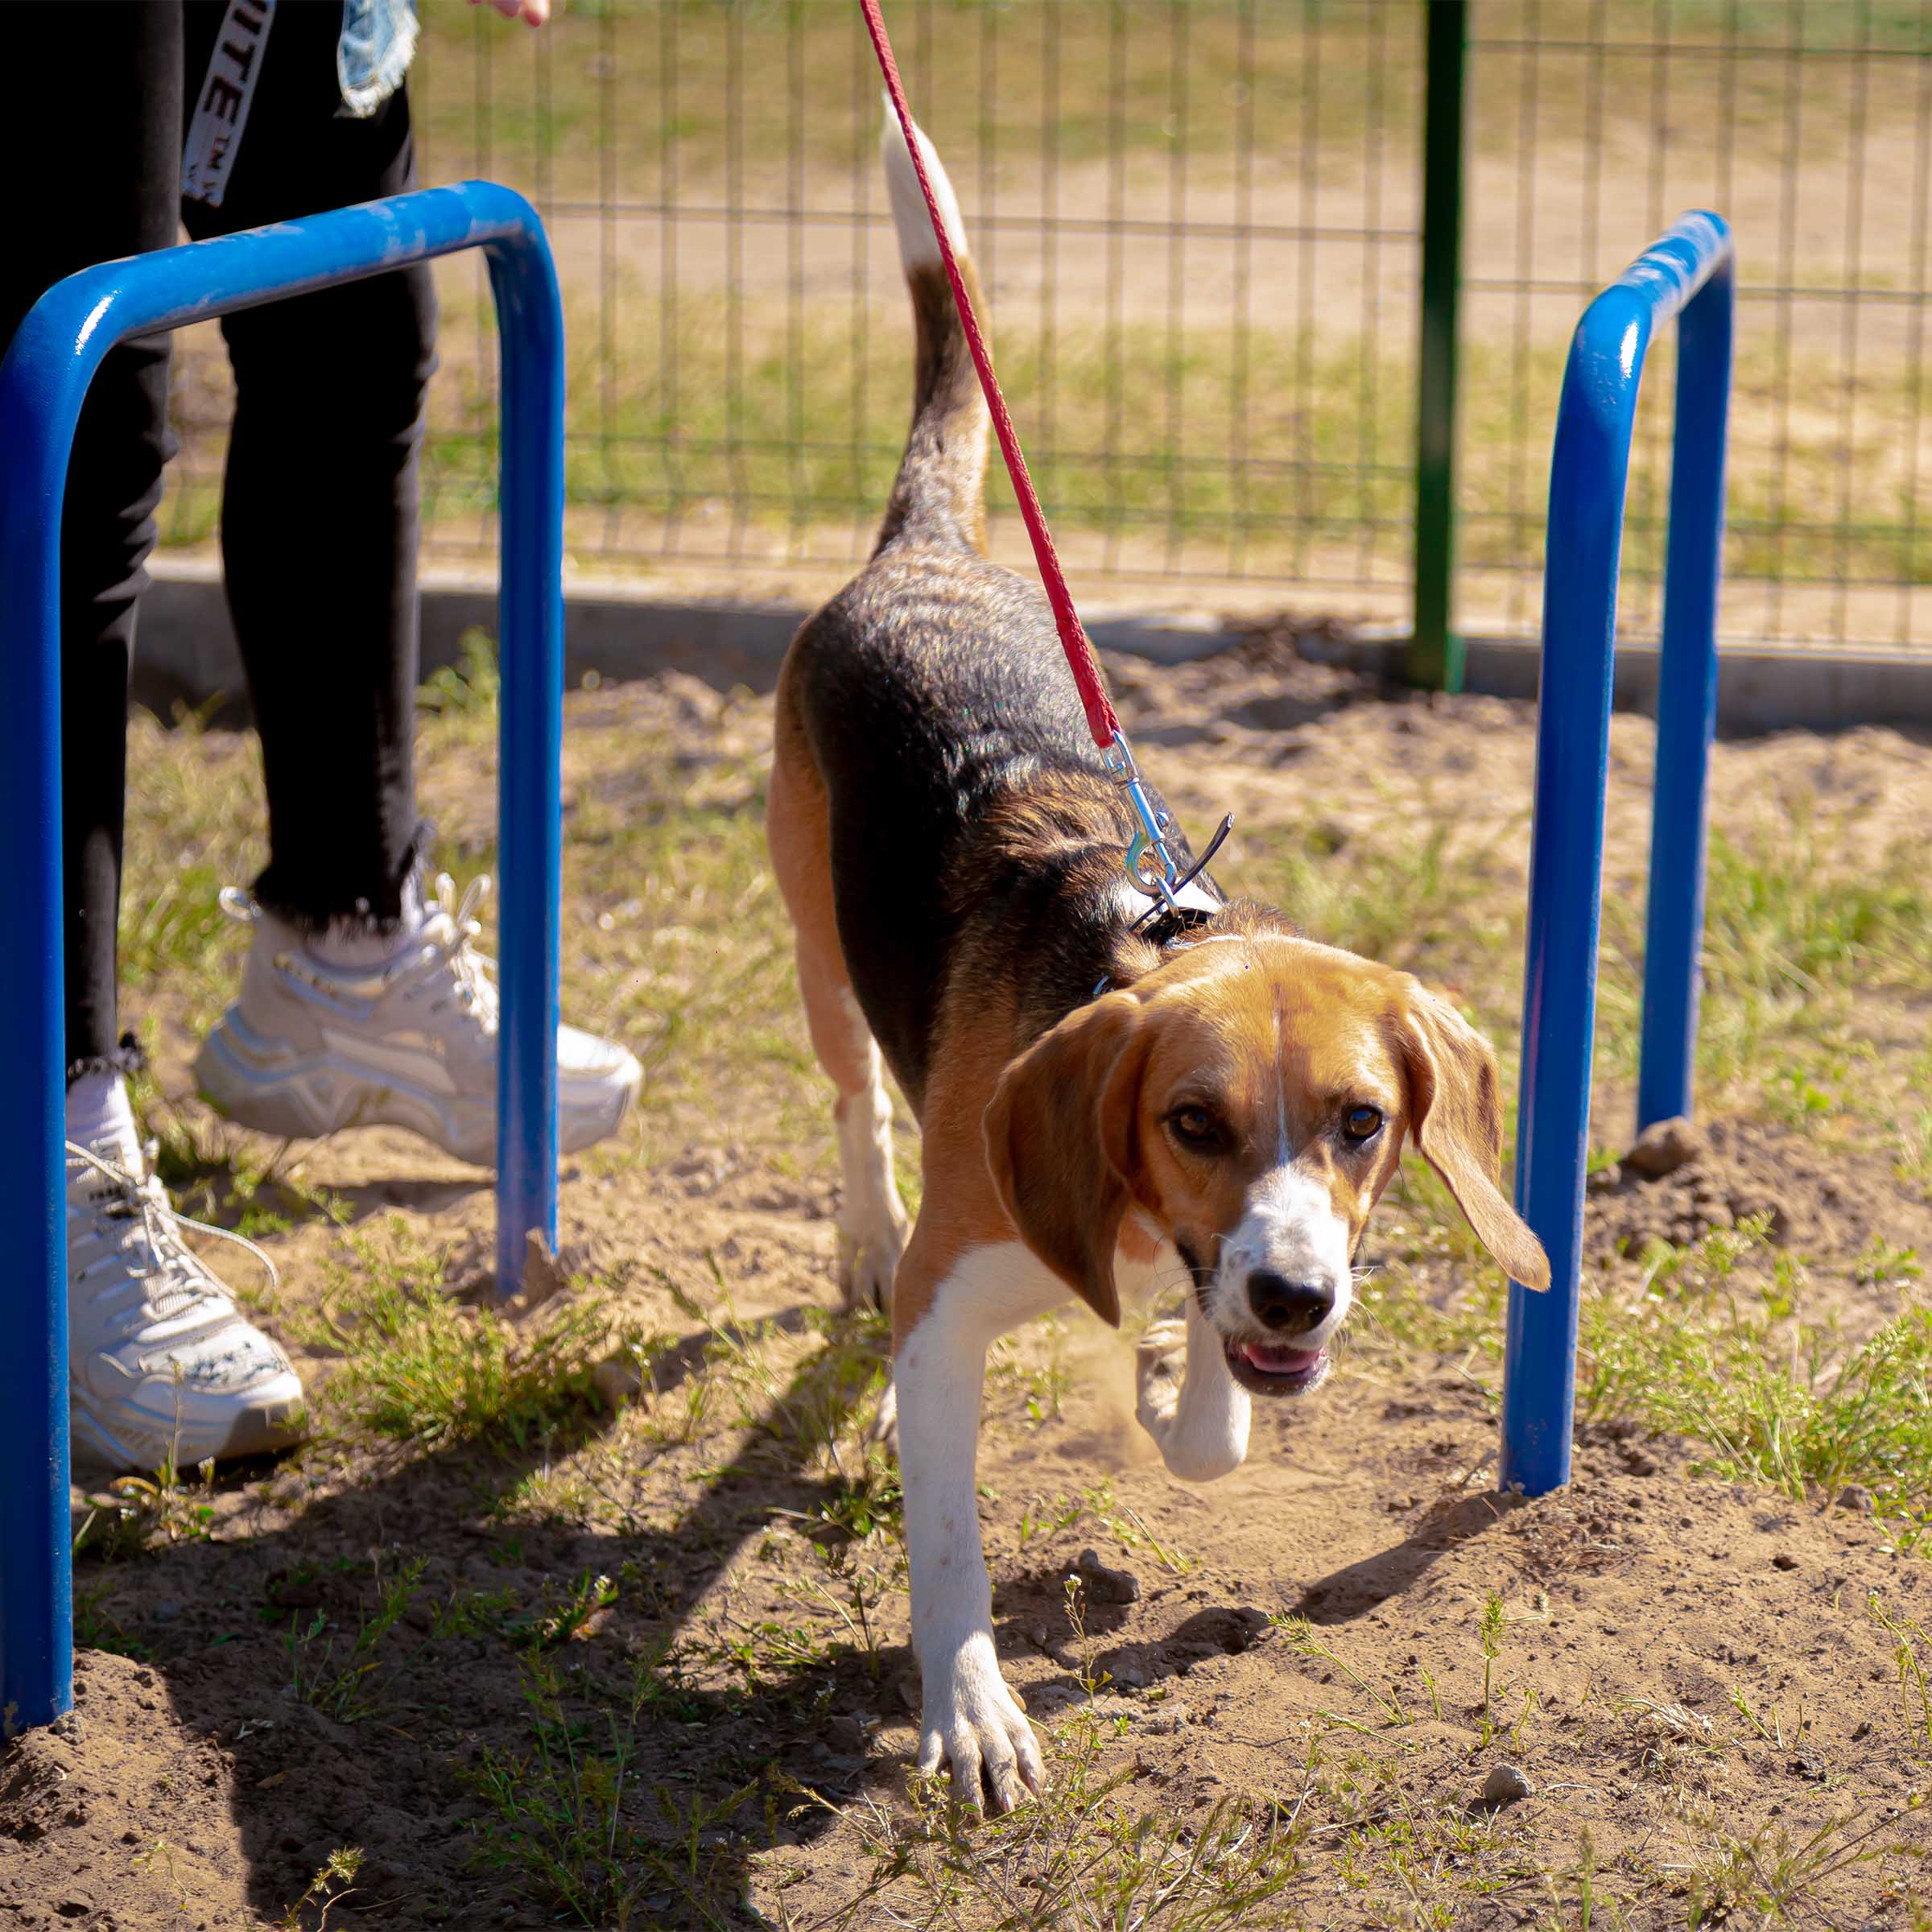 Площадка для выгула для собак: нормы и правила